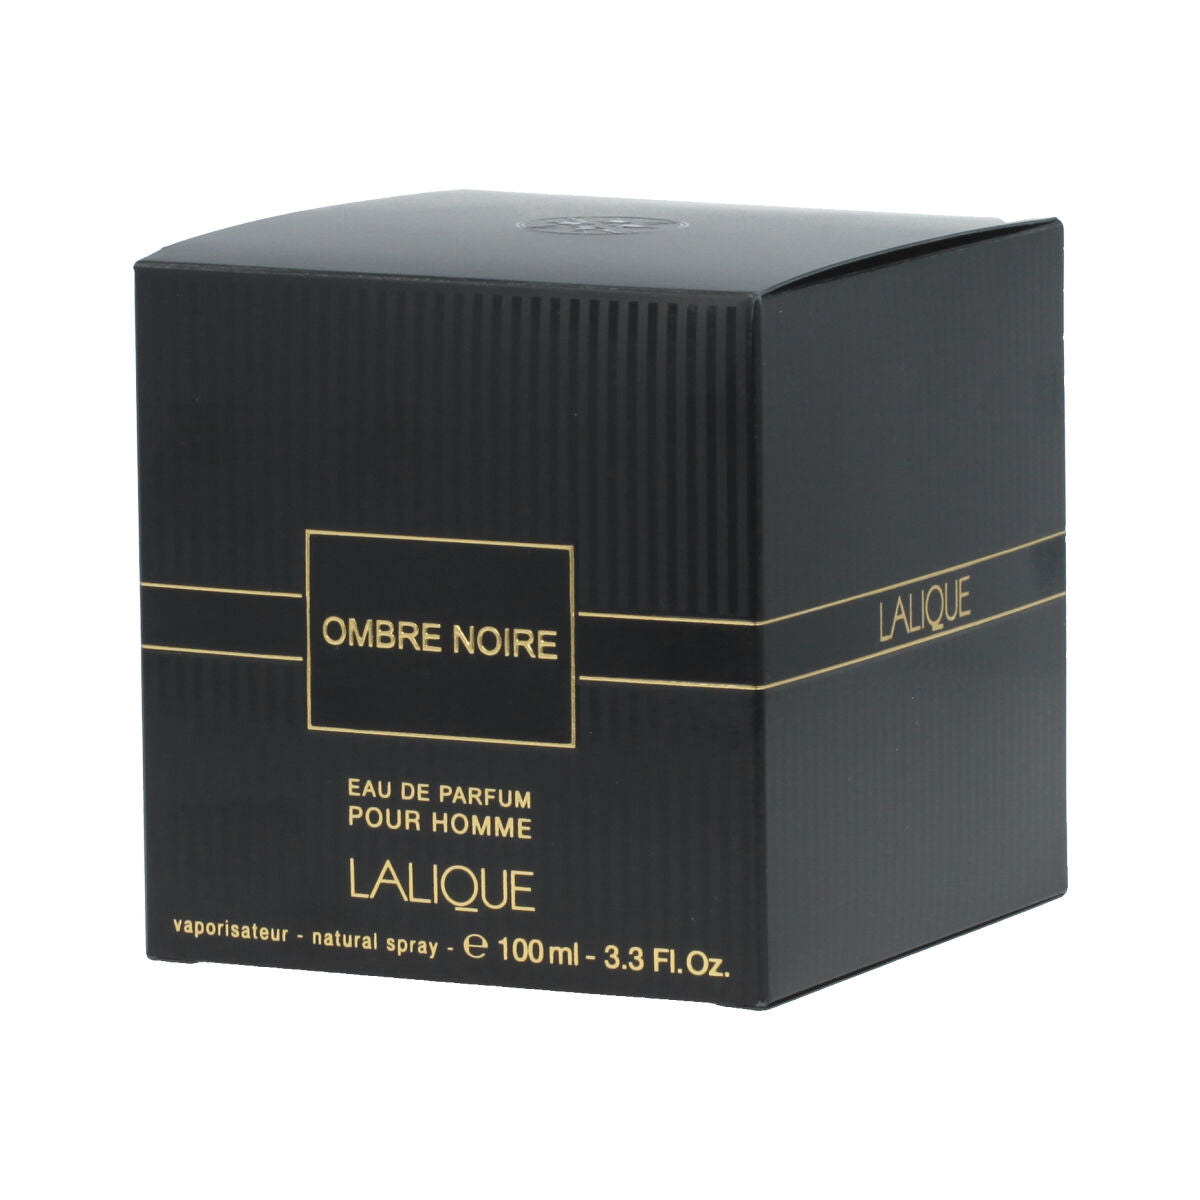 Muški parfem lalique edp ombre noire 100 ml